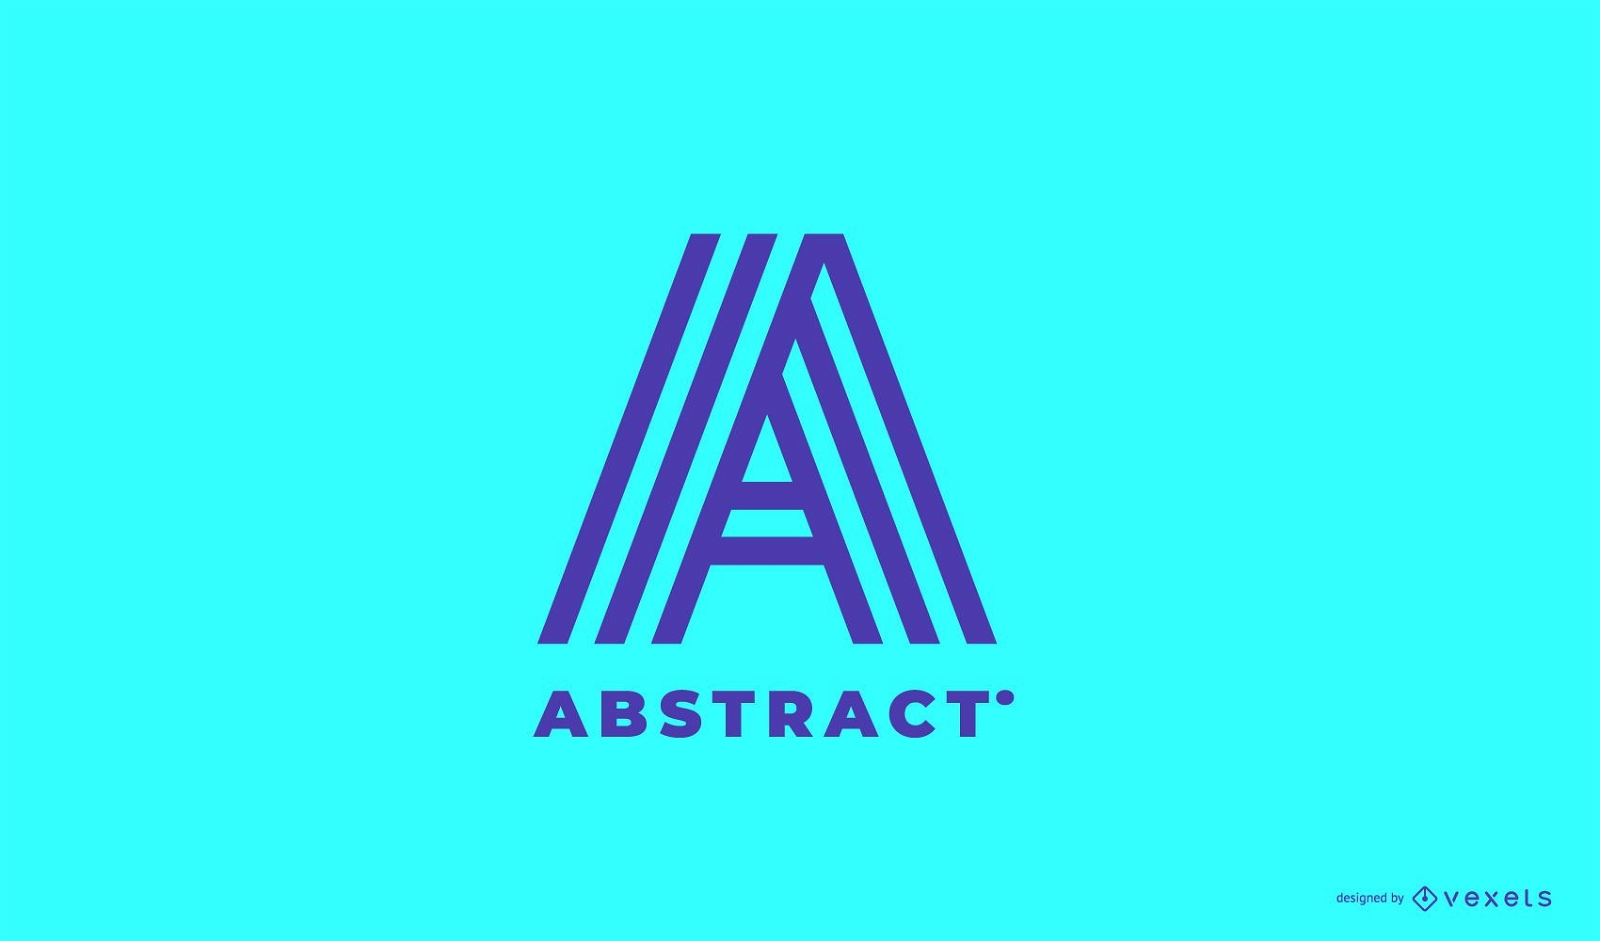 Abstract logo editable design